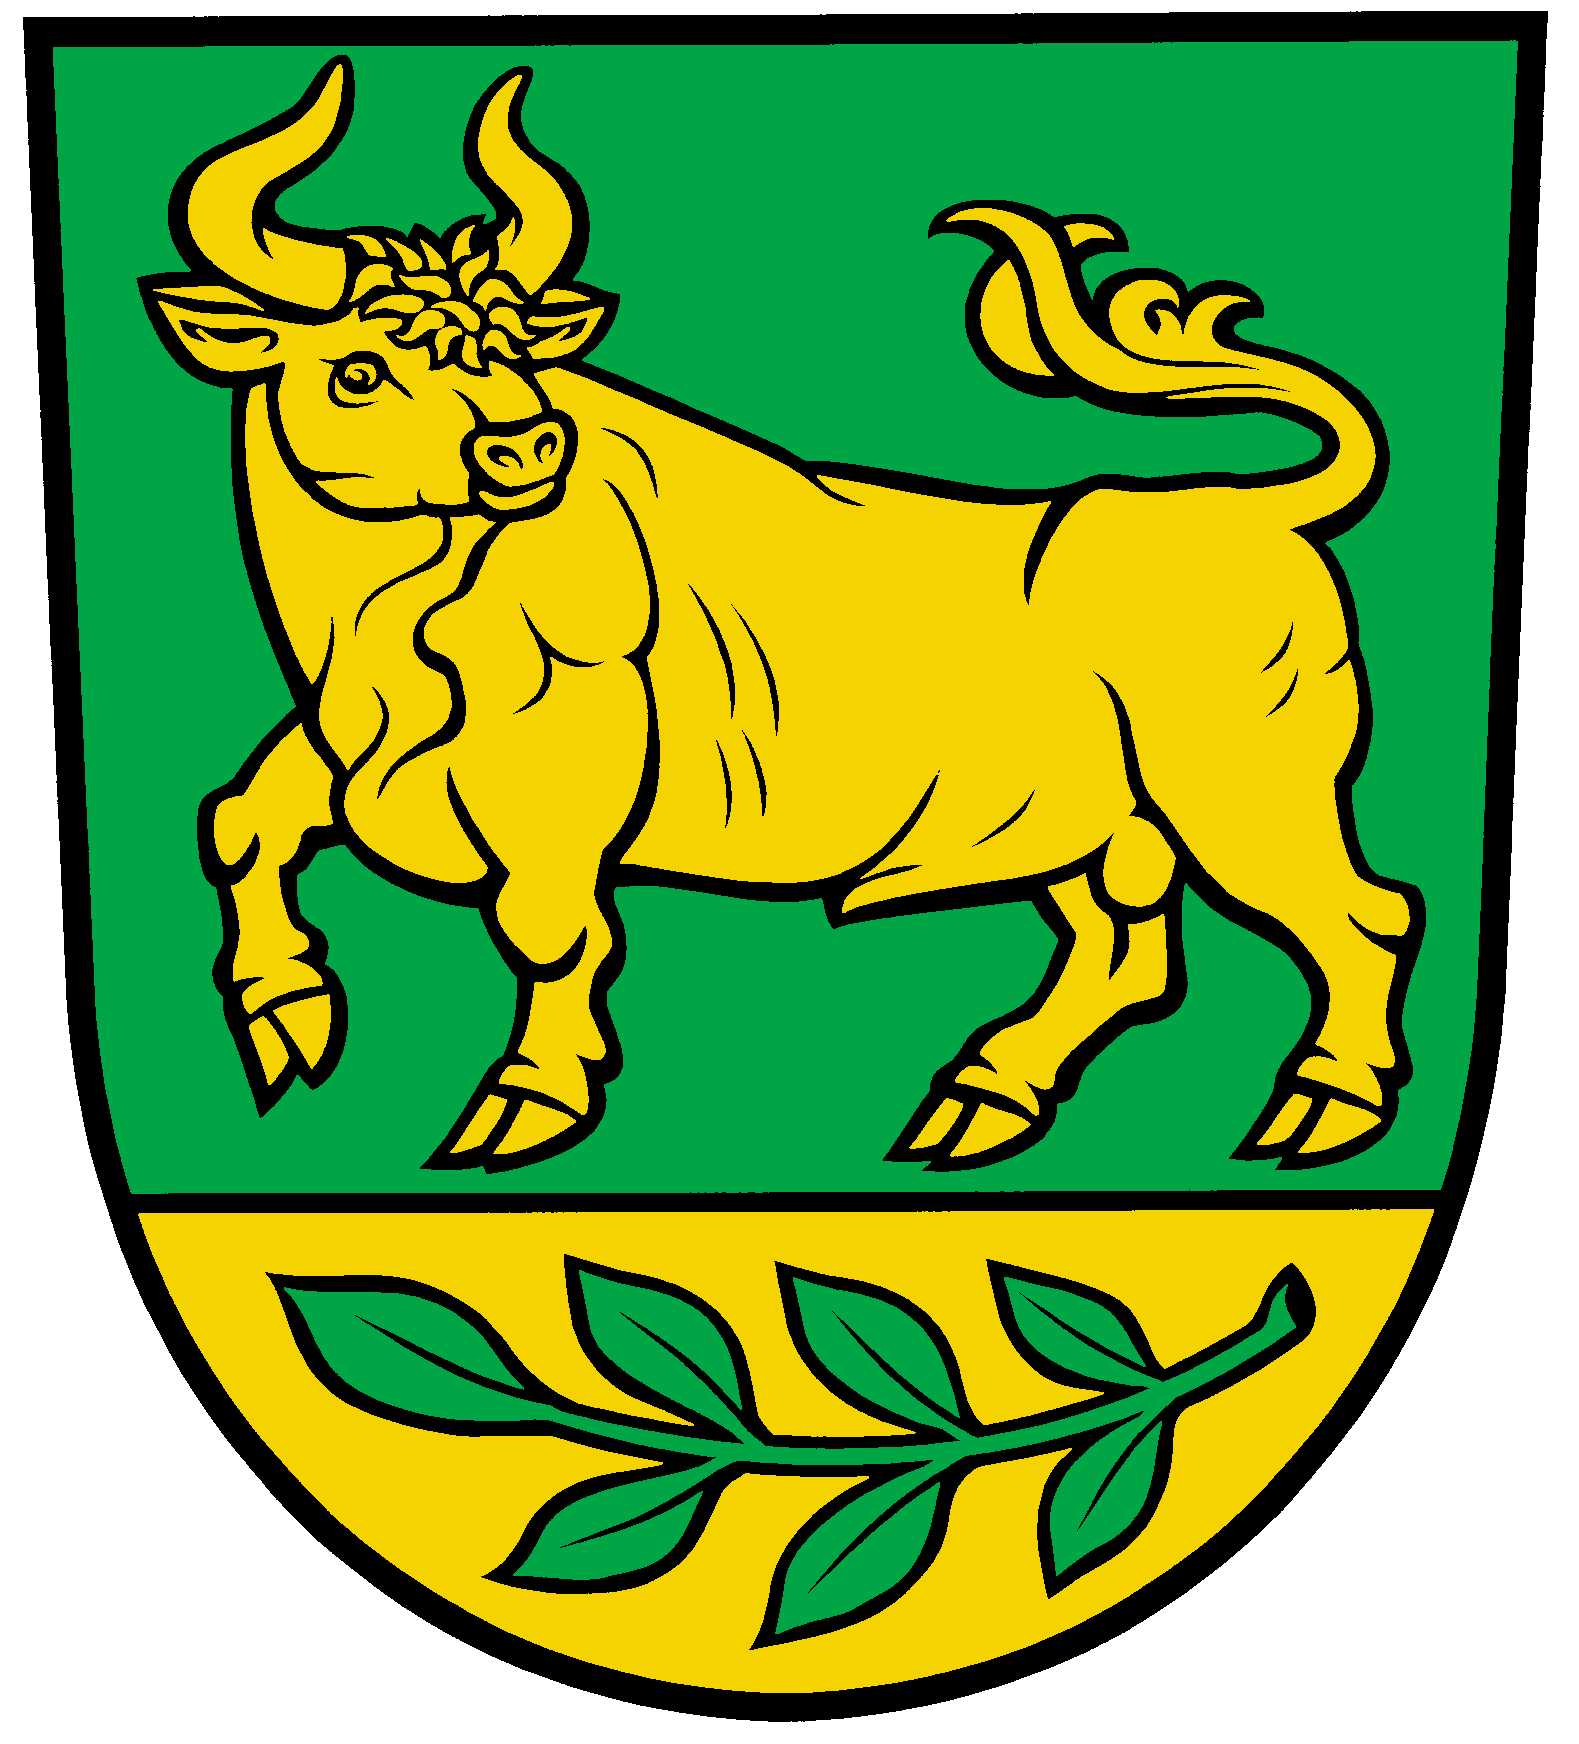 In Grün über goldenem Schildfuß, belegt mit einem liegenden grünen Eschenzweig, ein schreitender, widersehender goldener Auerochse.